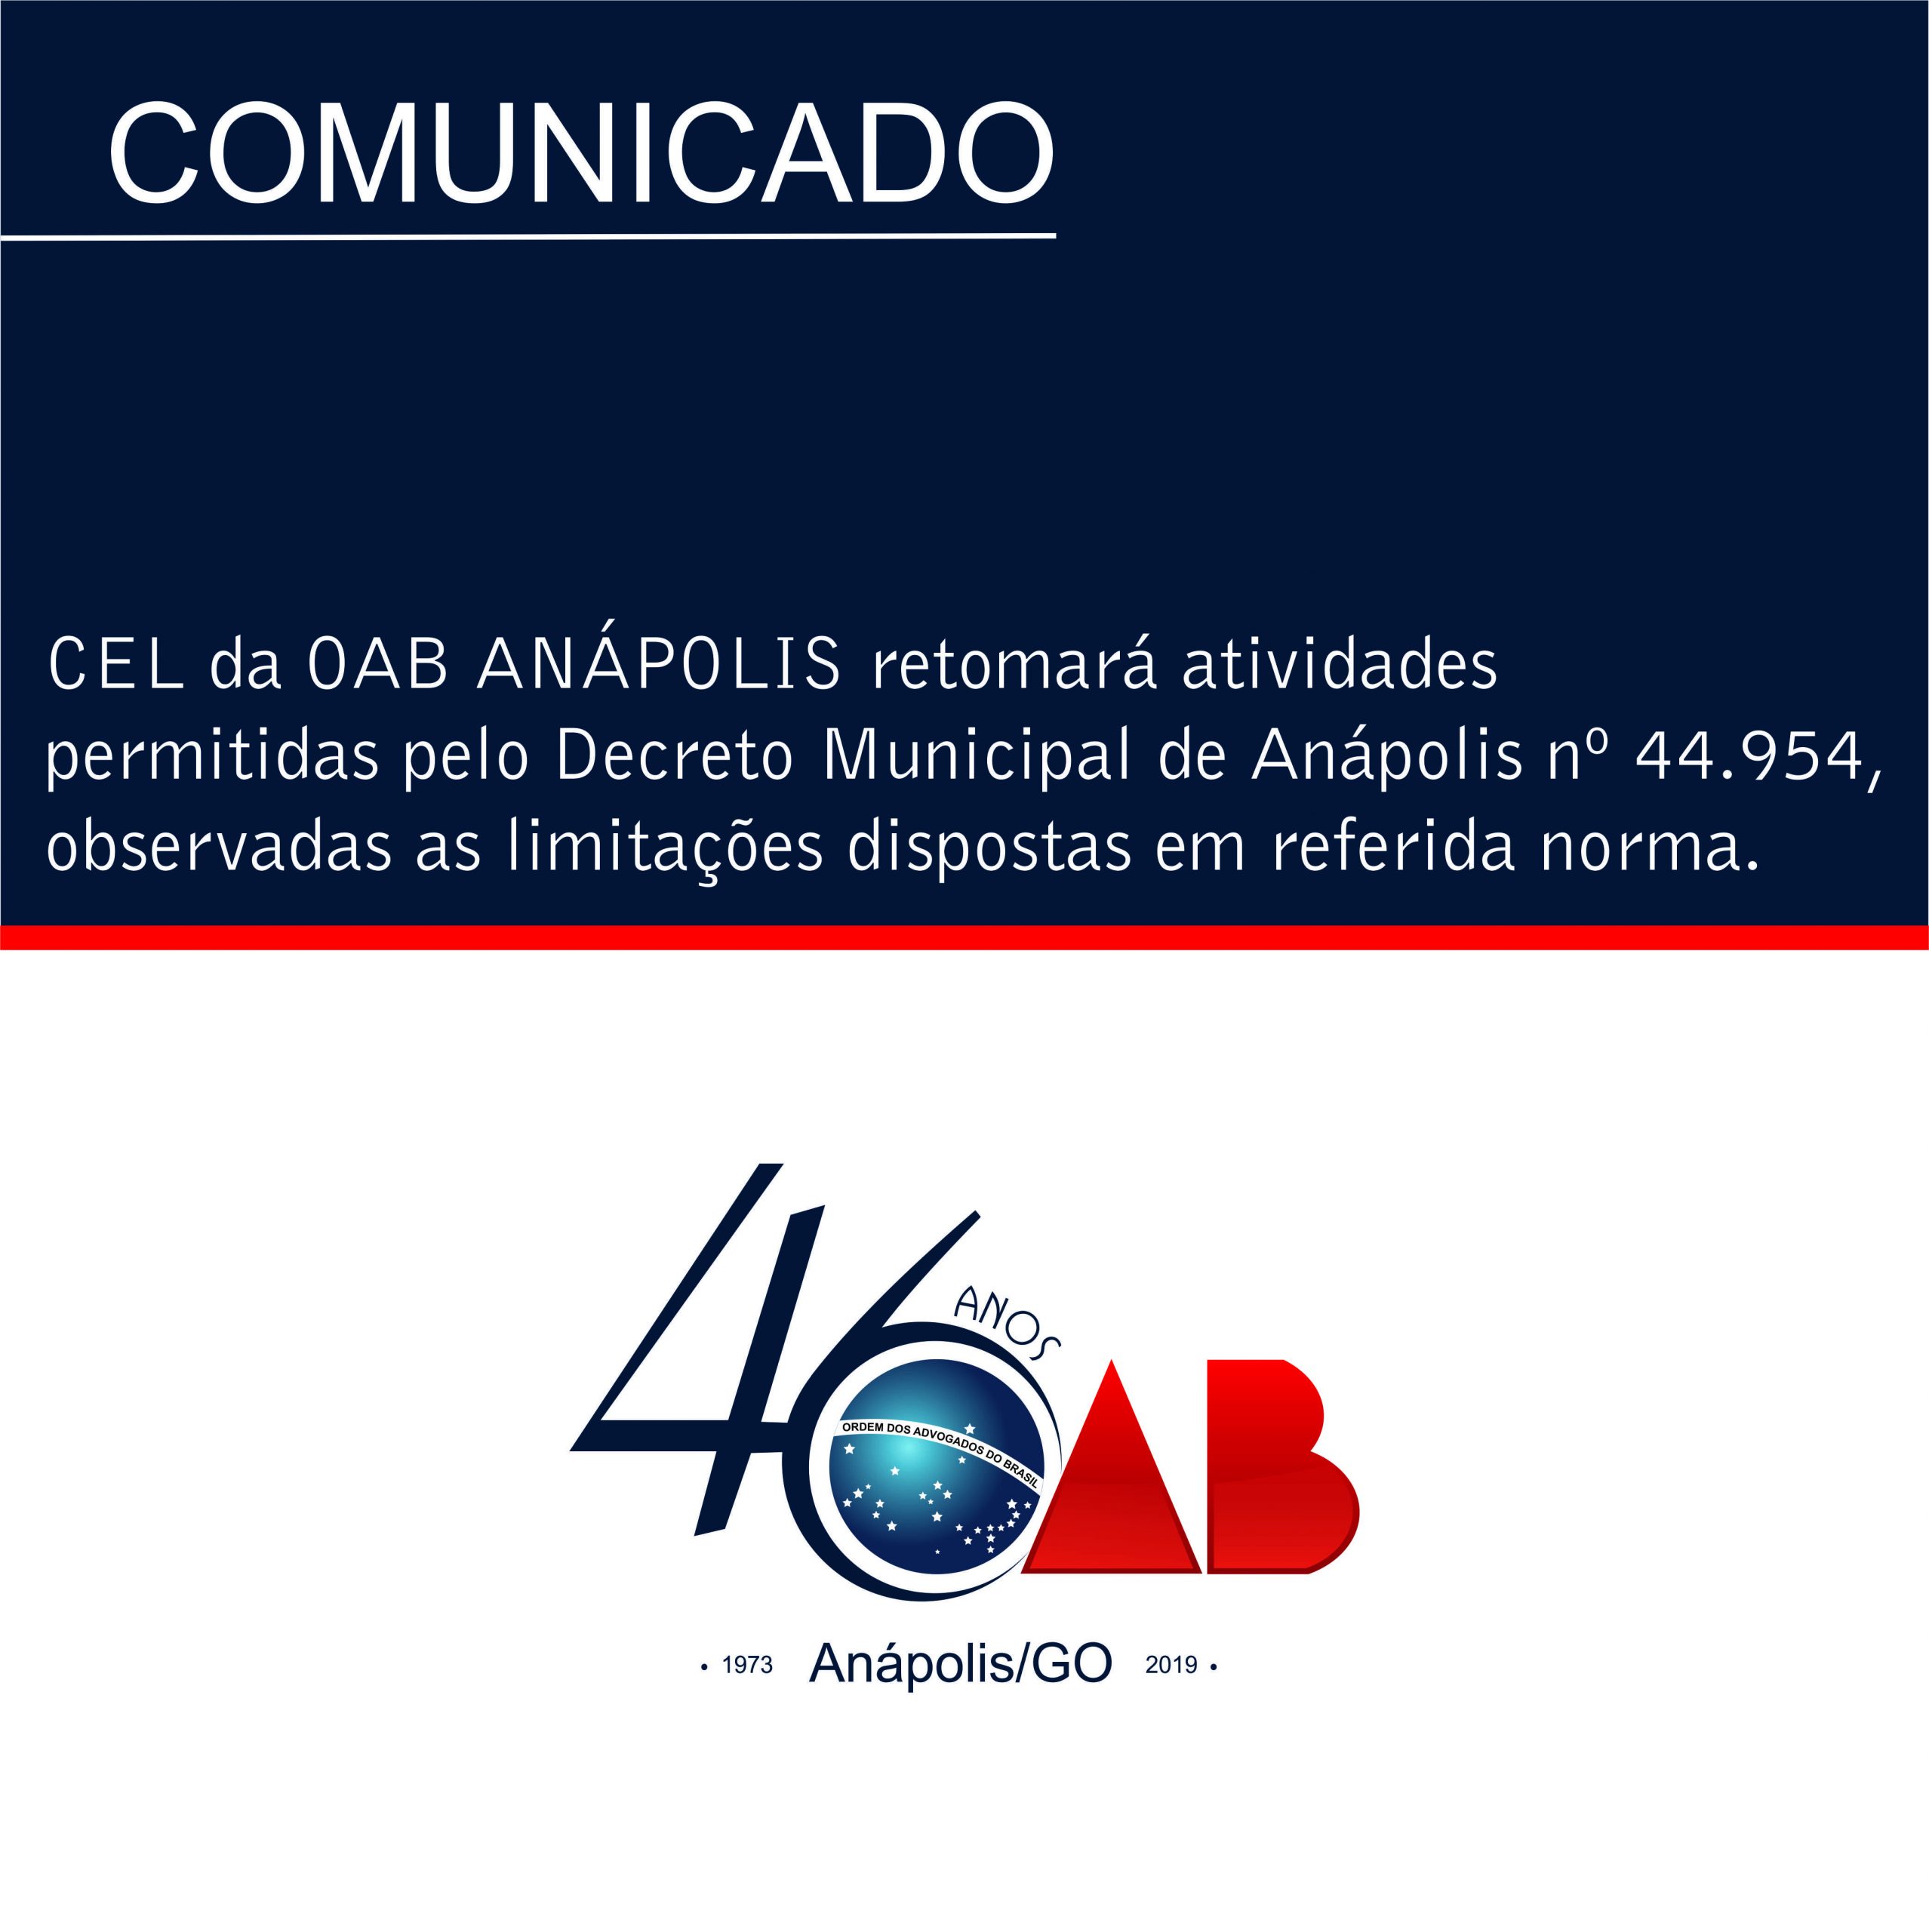 CEL da OAB ANÁPOLIS retomará atividades permitidas pelo Decreto Municipal de Anápolis nº 44.954, observadas as limitações dispostas em referida norma